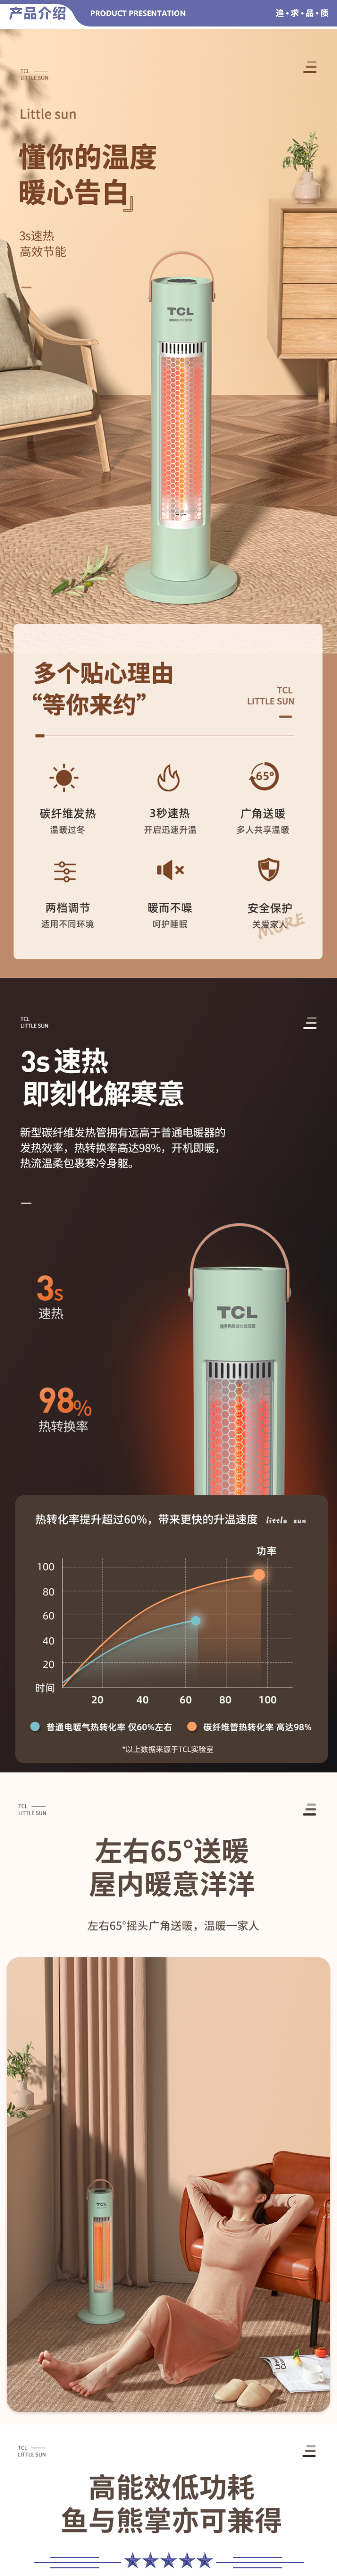 TCL TN21-S06C 取暖器小太阳家用取暖电器客厅烤火卧室塔式电暖器摇头办公室立式暖手暖脚电暖气绿色 2.jpg